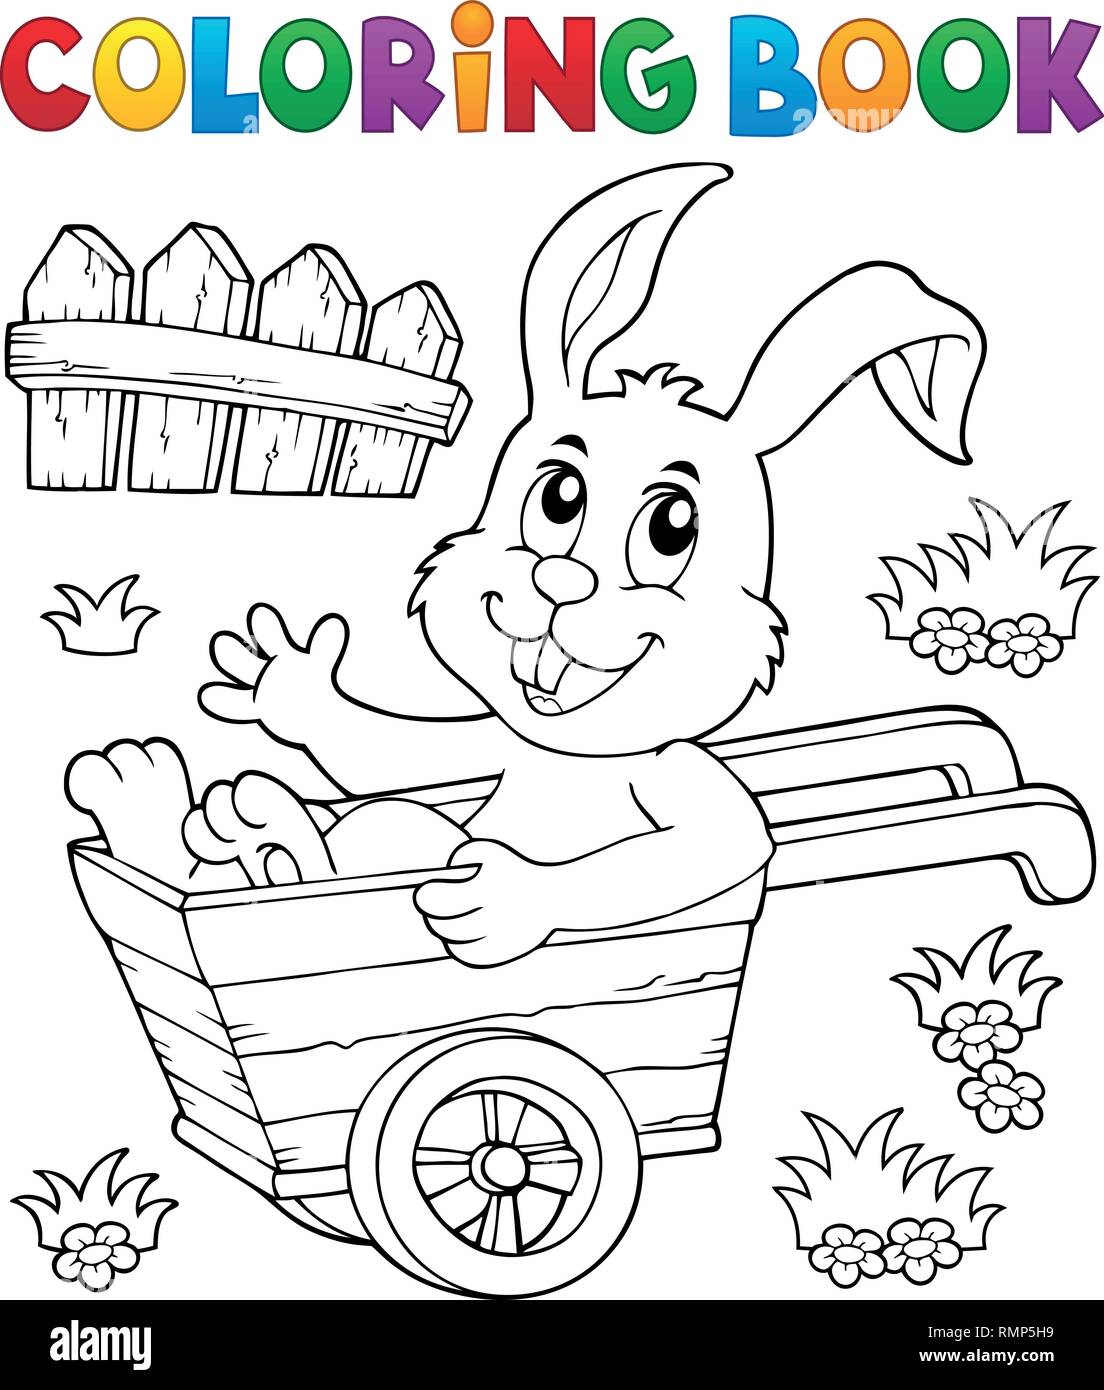 Coloring book bunny in wheelbarrow 1 - eps10 vector illustration. Stock Vector